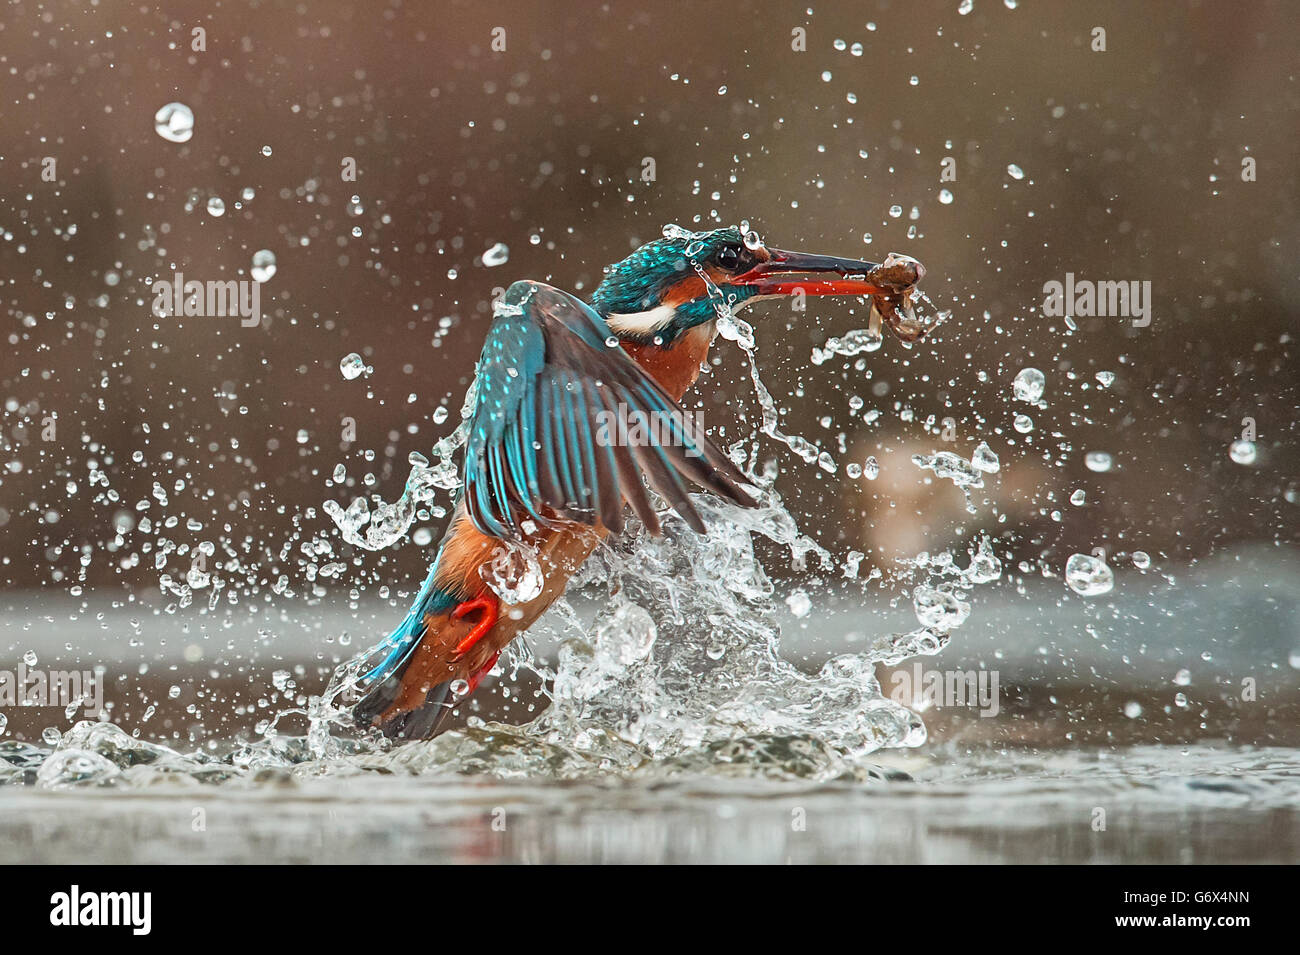 Kingfisher commun plongée Banque D'Images